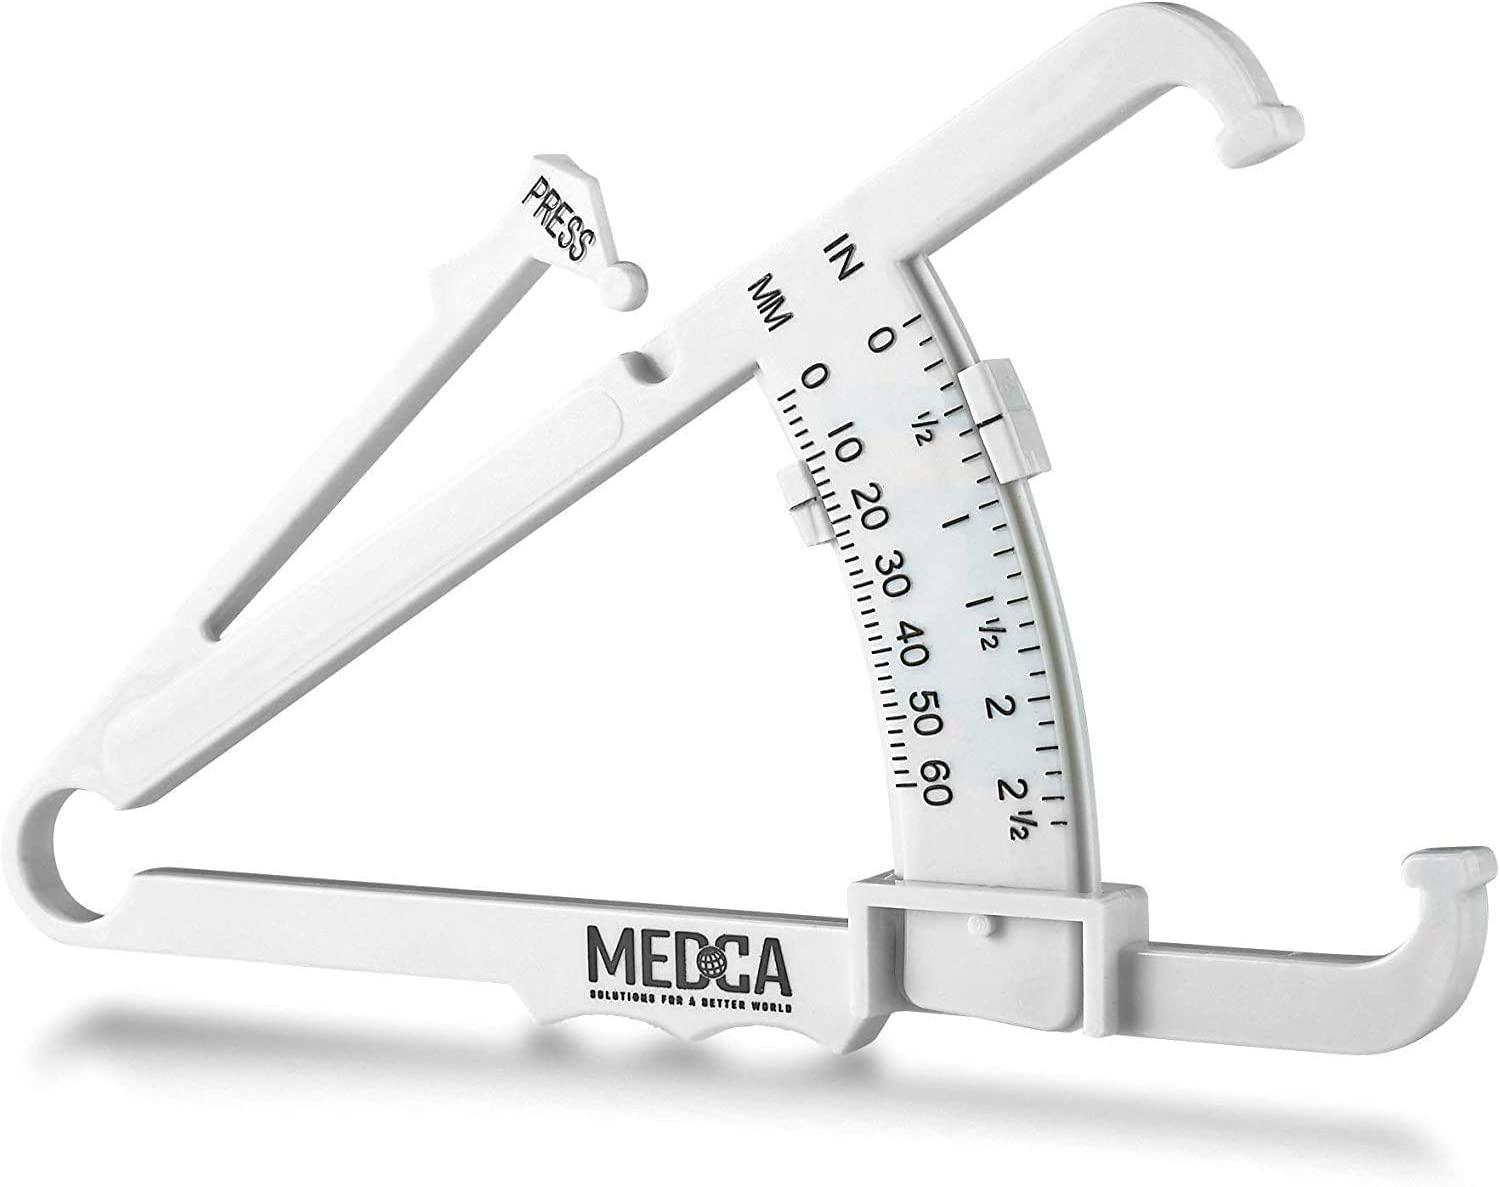 MEDca Body Fat Measuring Body Fat Monitors and Tape.